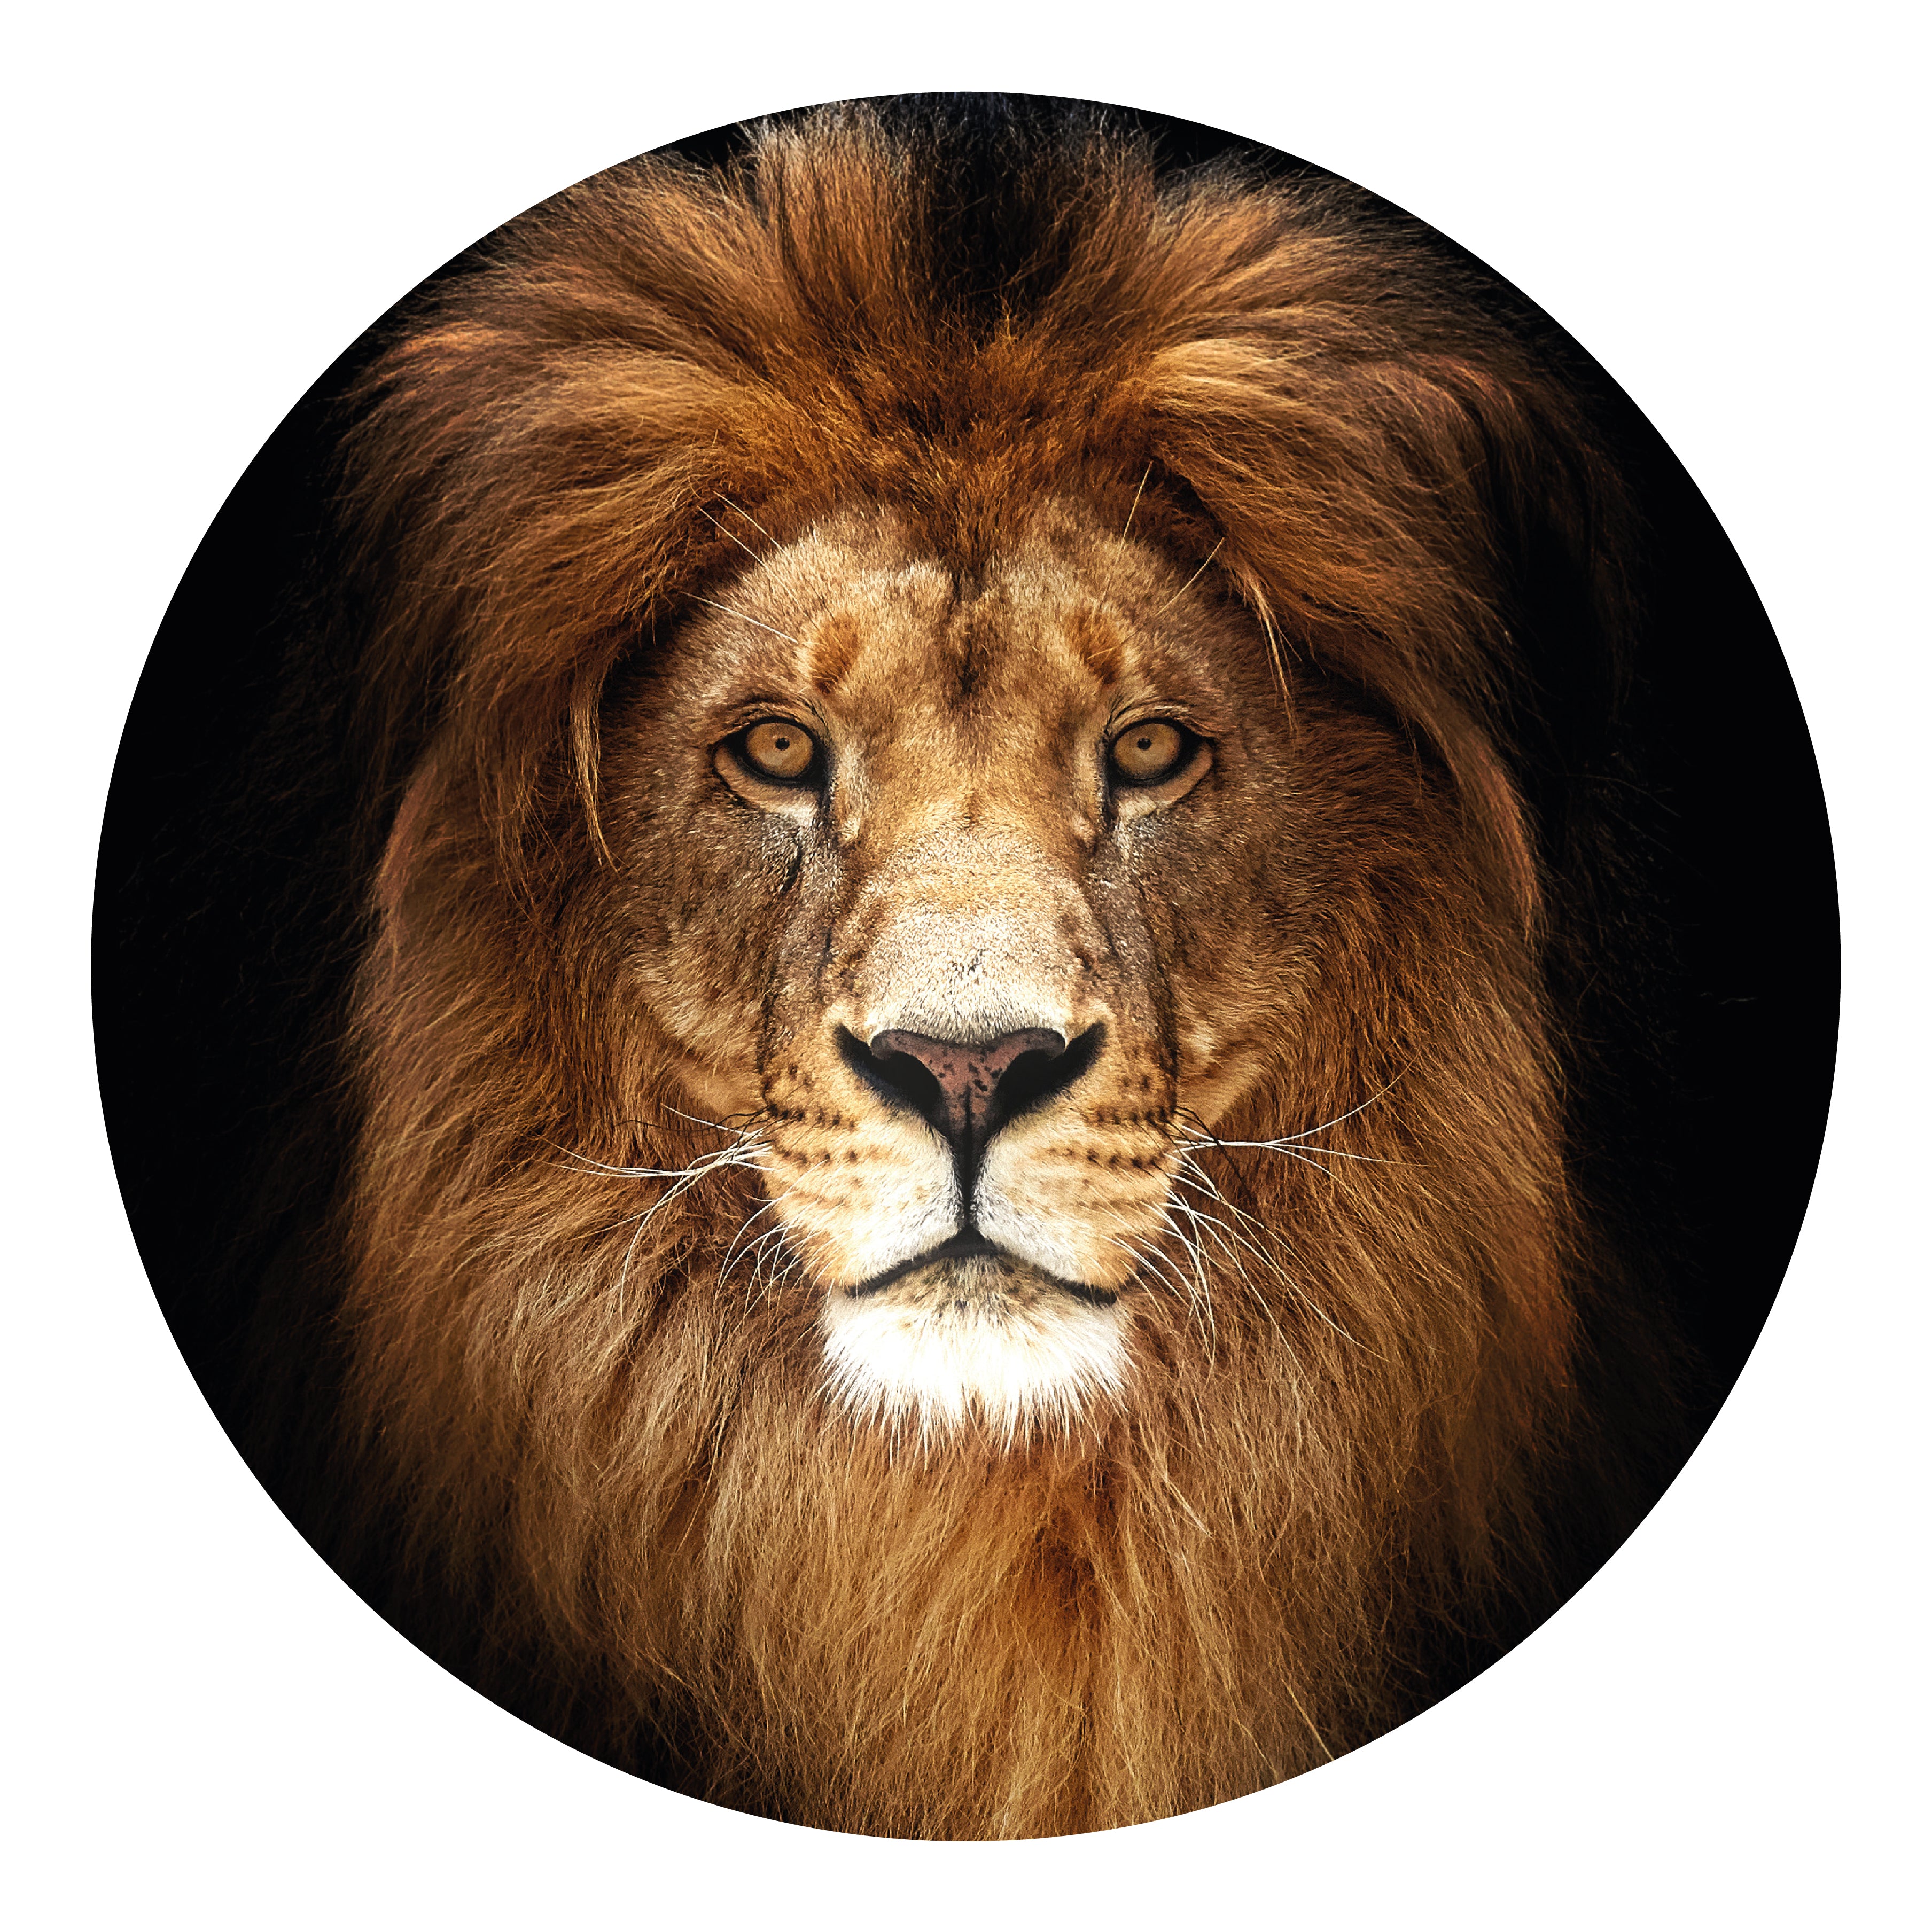 PLEXIGLAS - LION KING ROUND